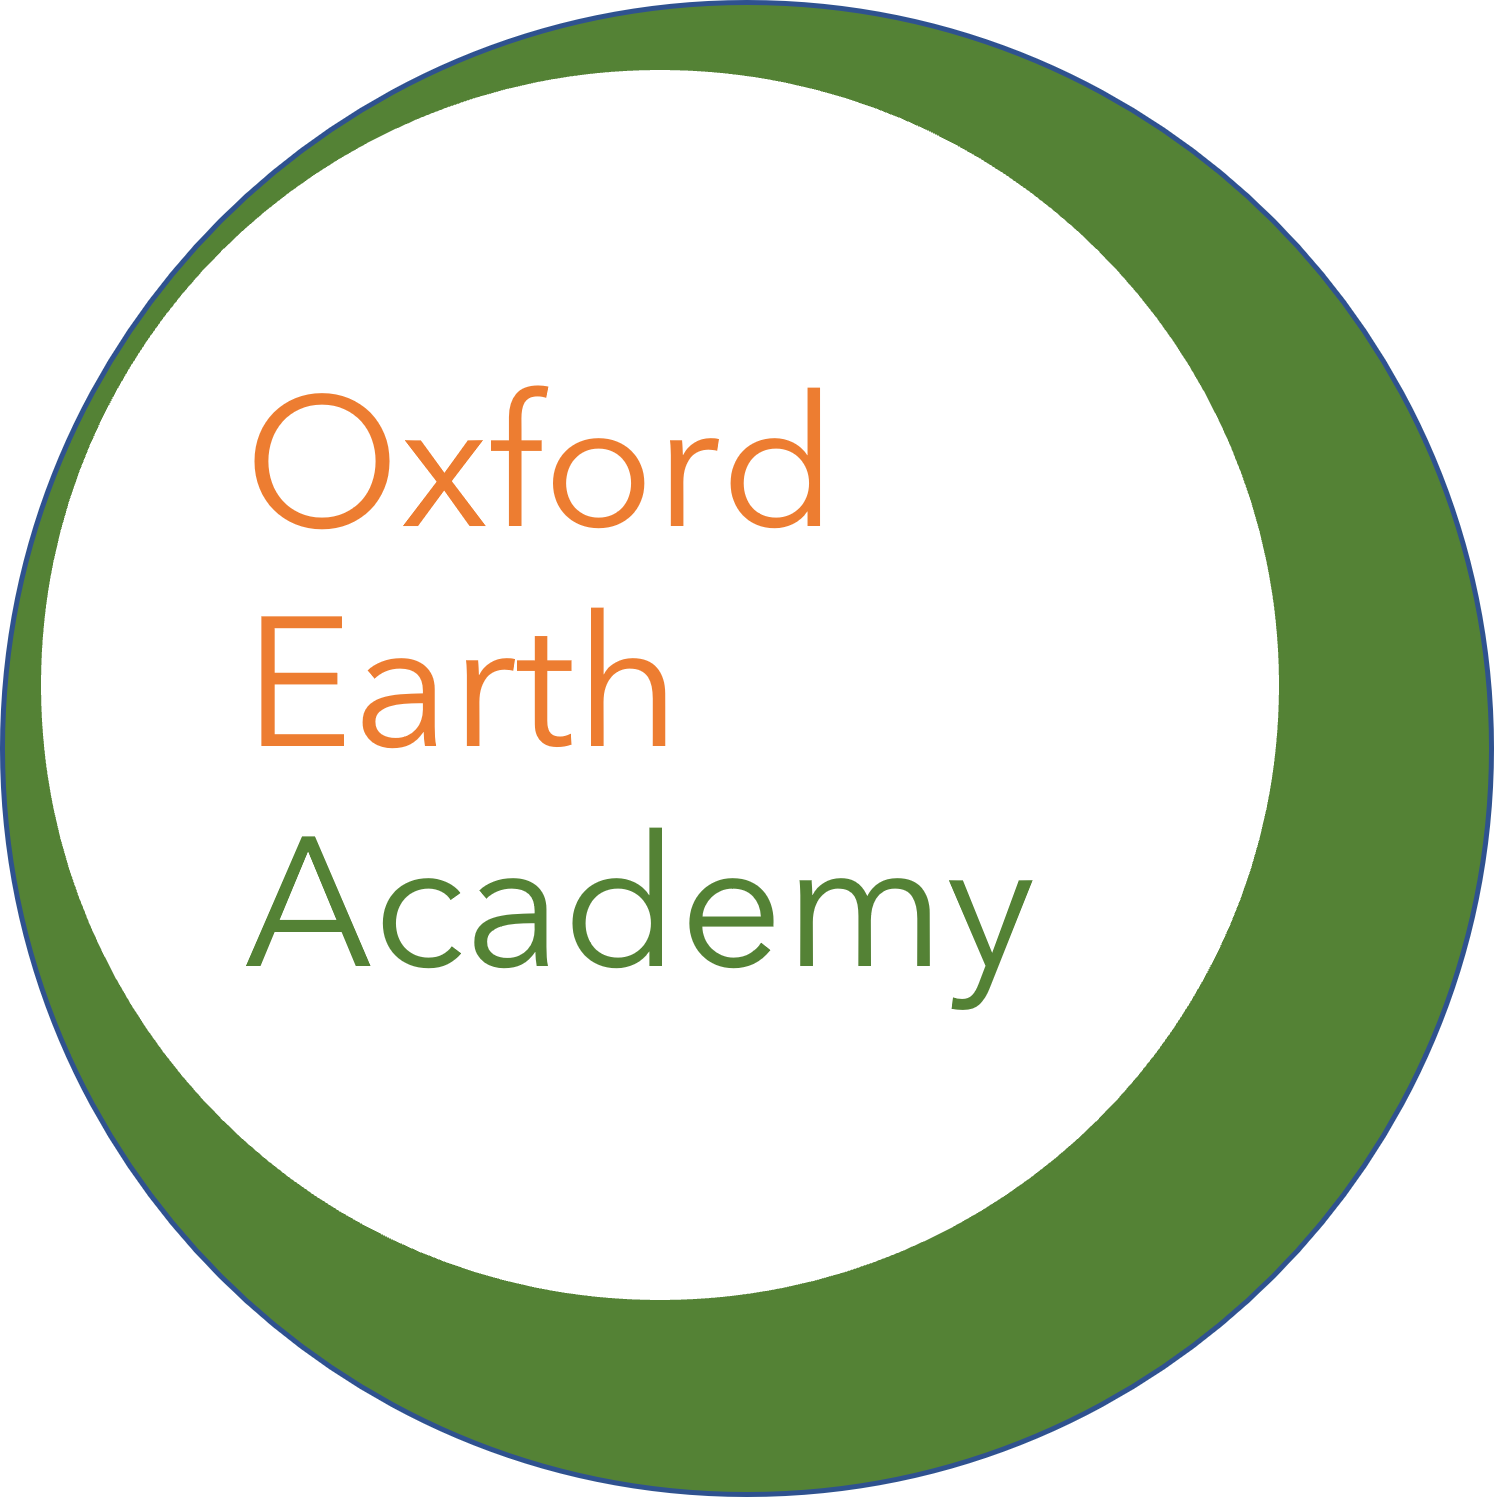 Oxford Earth Academy